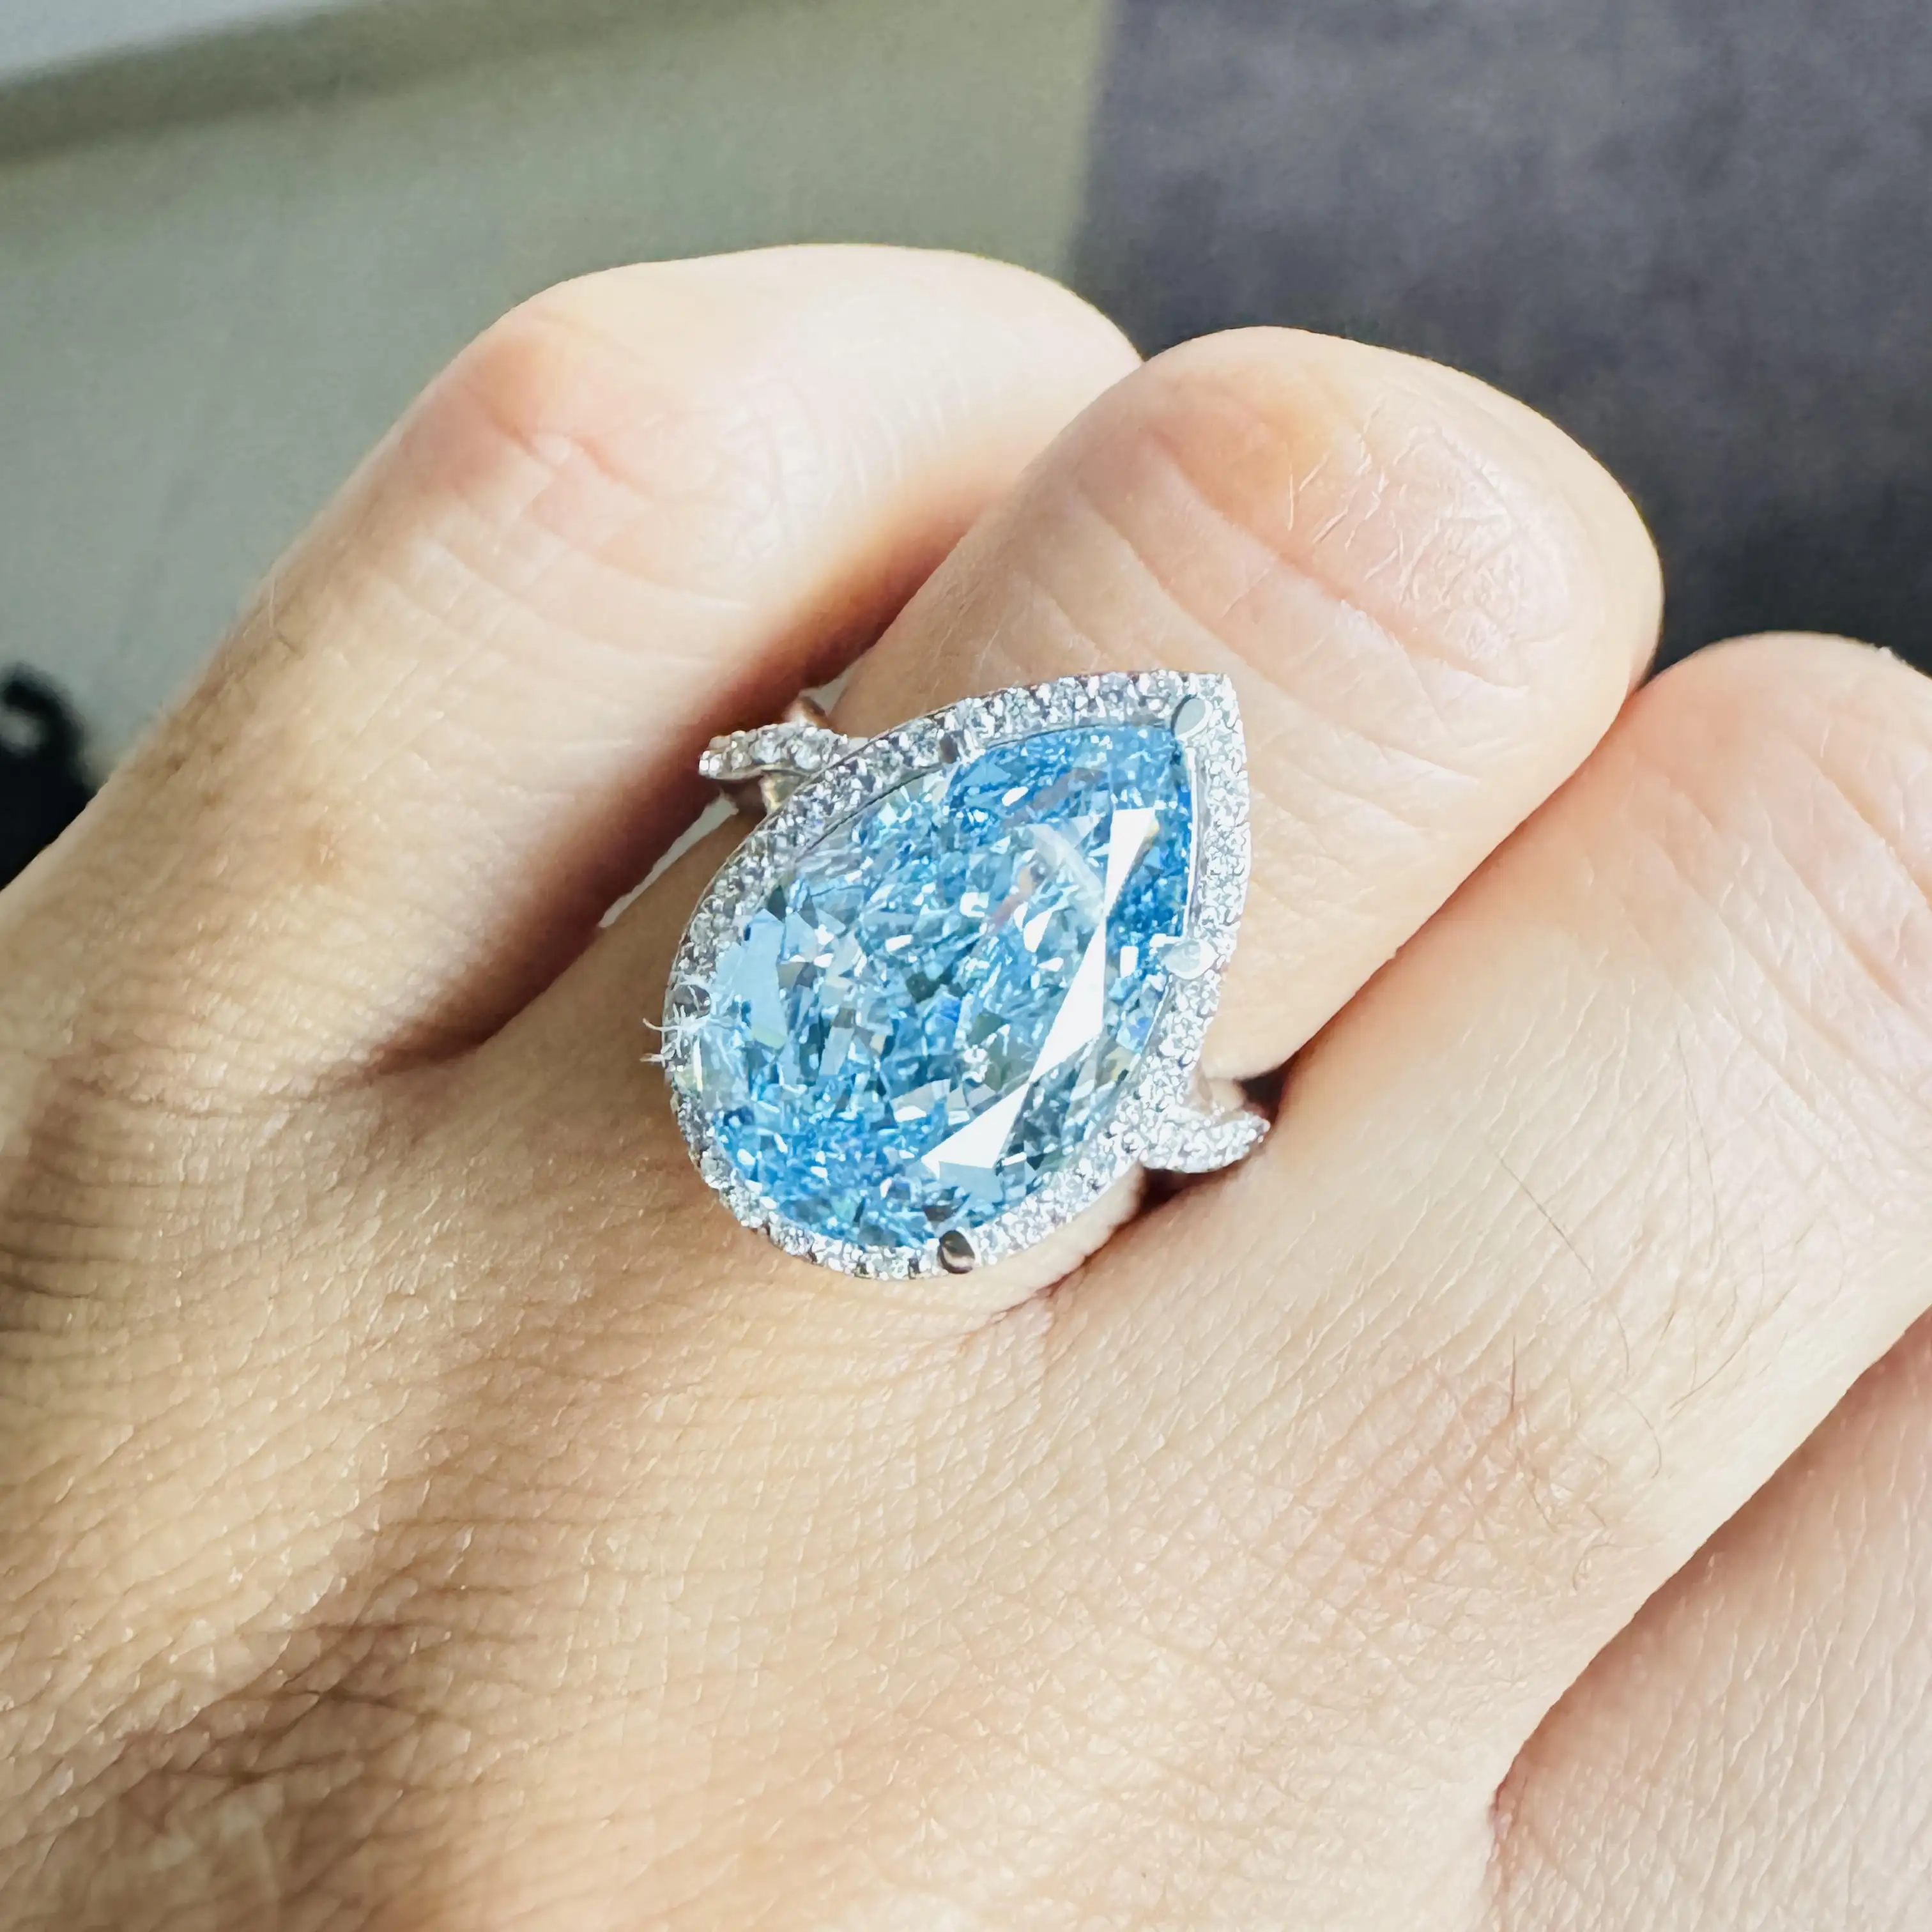 Perenform lab erwachsener Diamant Verlobungsring 18K Gold ausgefallener Ring Perrendel-Jahrestag Versprechen einfarbiger Gold-Everheiratungsring